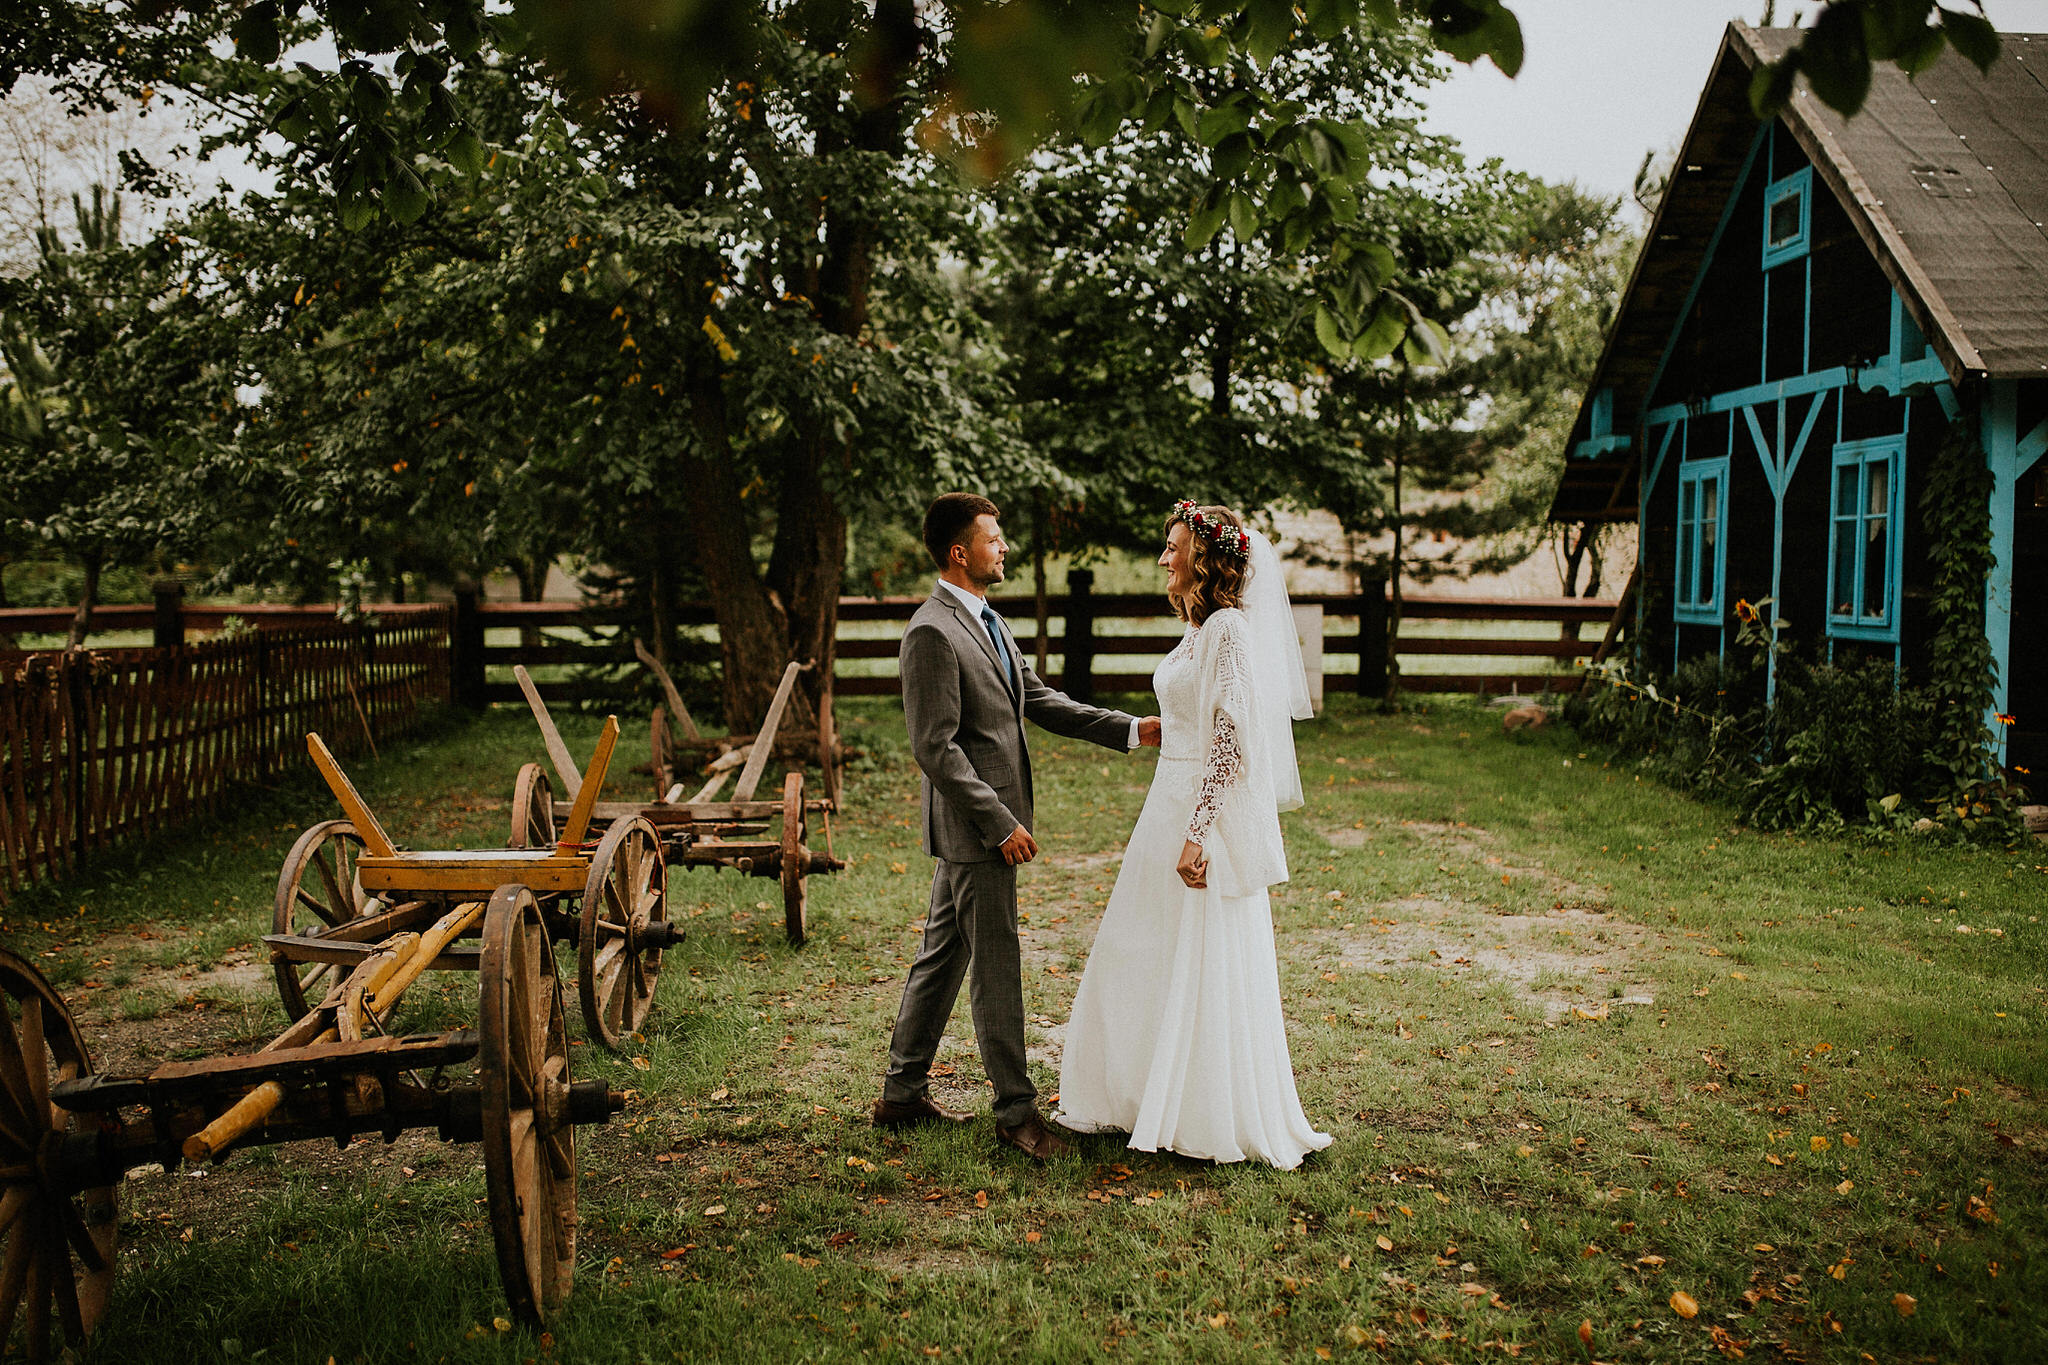 Wedding in barn